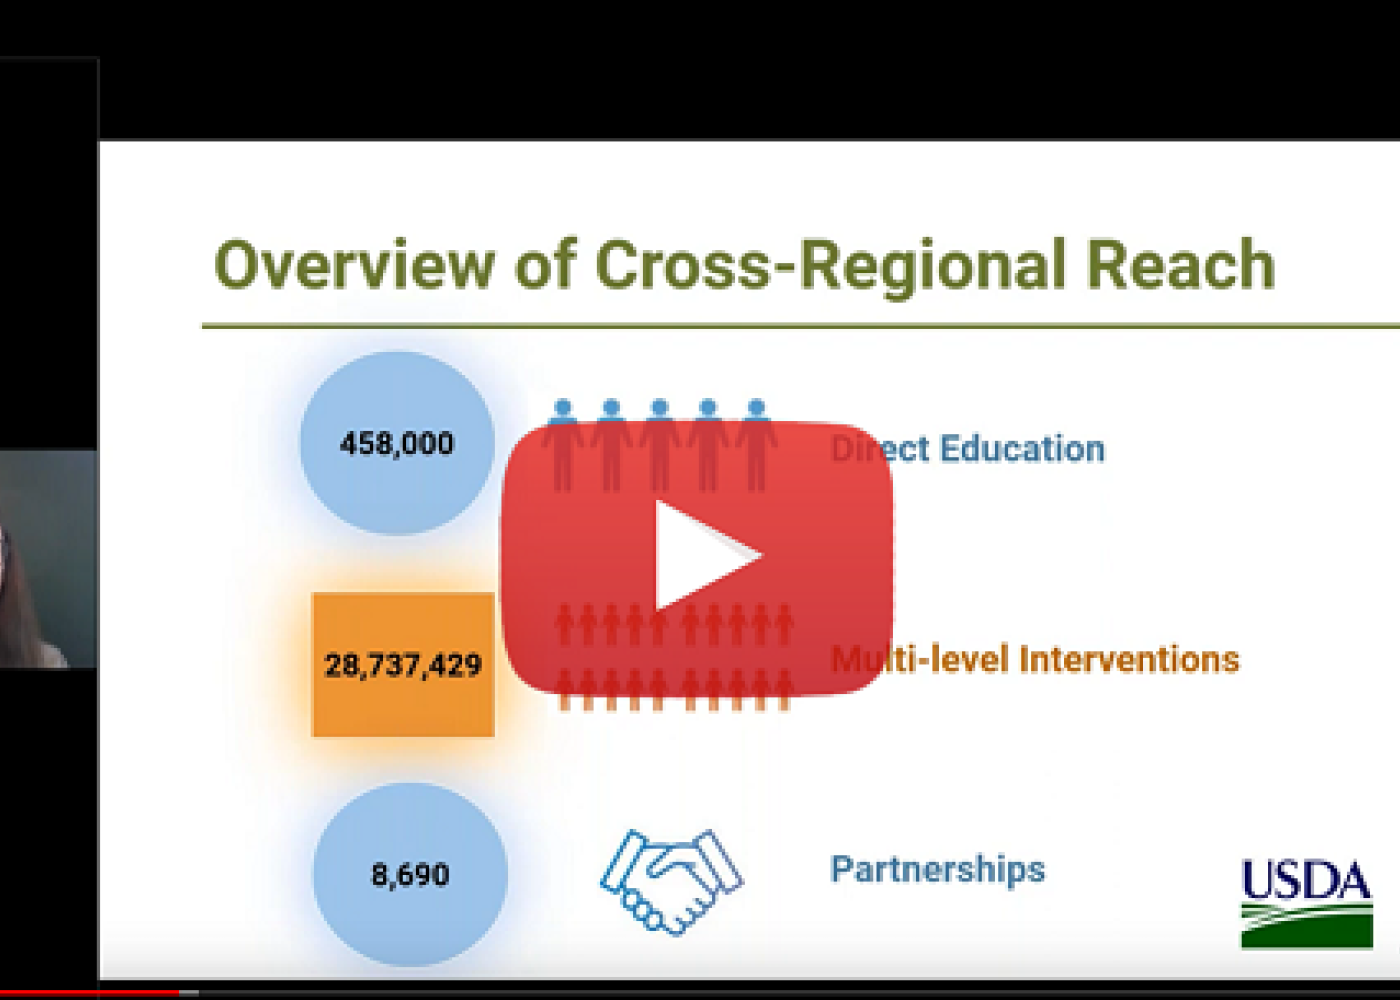 Overview of Cross-Regional Reach screenshot from webinar